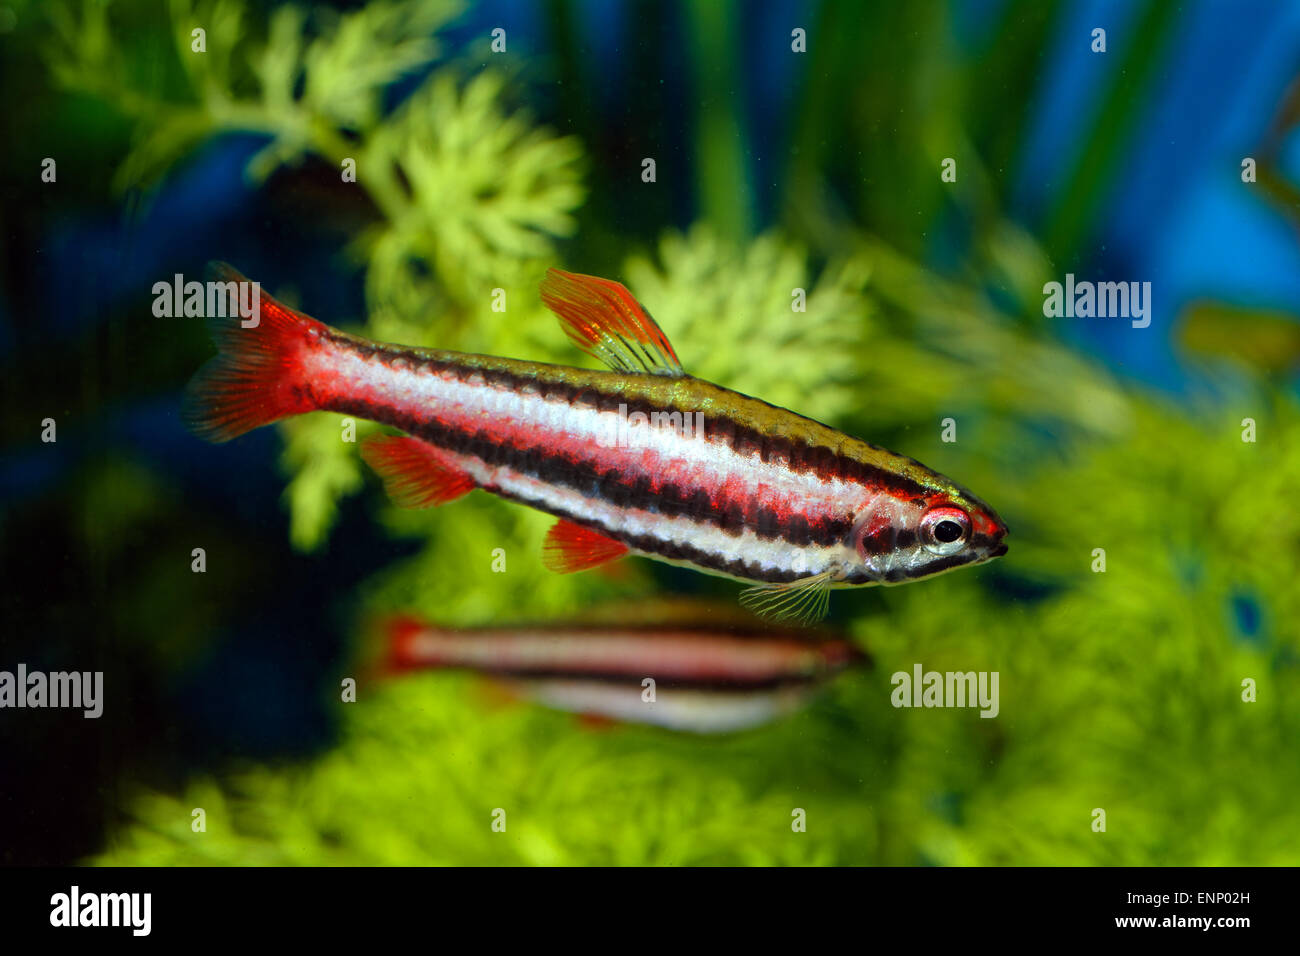 Nice aquarium fish from genus Nannostomus. Stock Photo